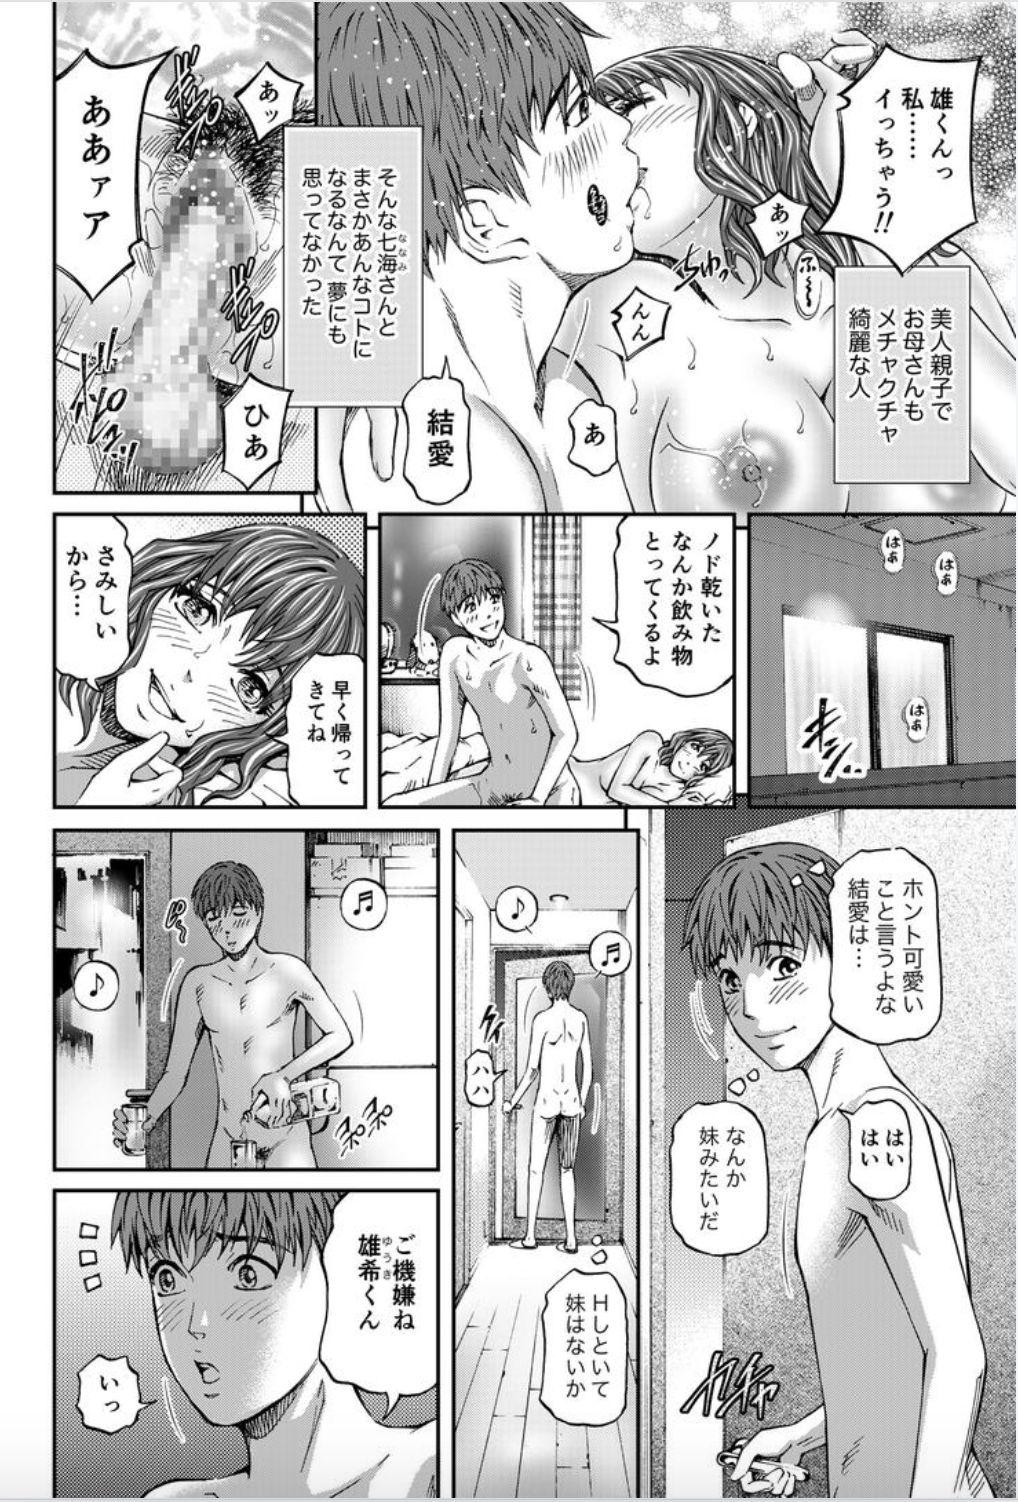 Butts Onna-tachi ga Iku Toki... Ero Drama Vol. 8 Datte, Kanojo no Haha ga... Tattooed - Page 4